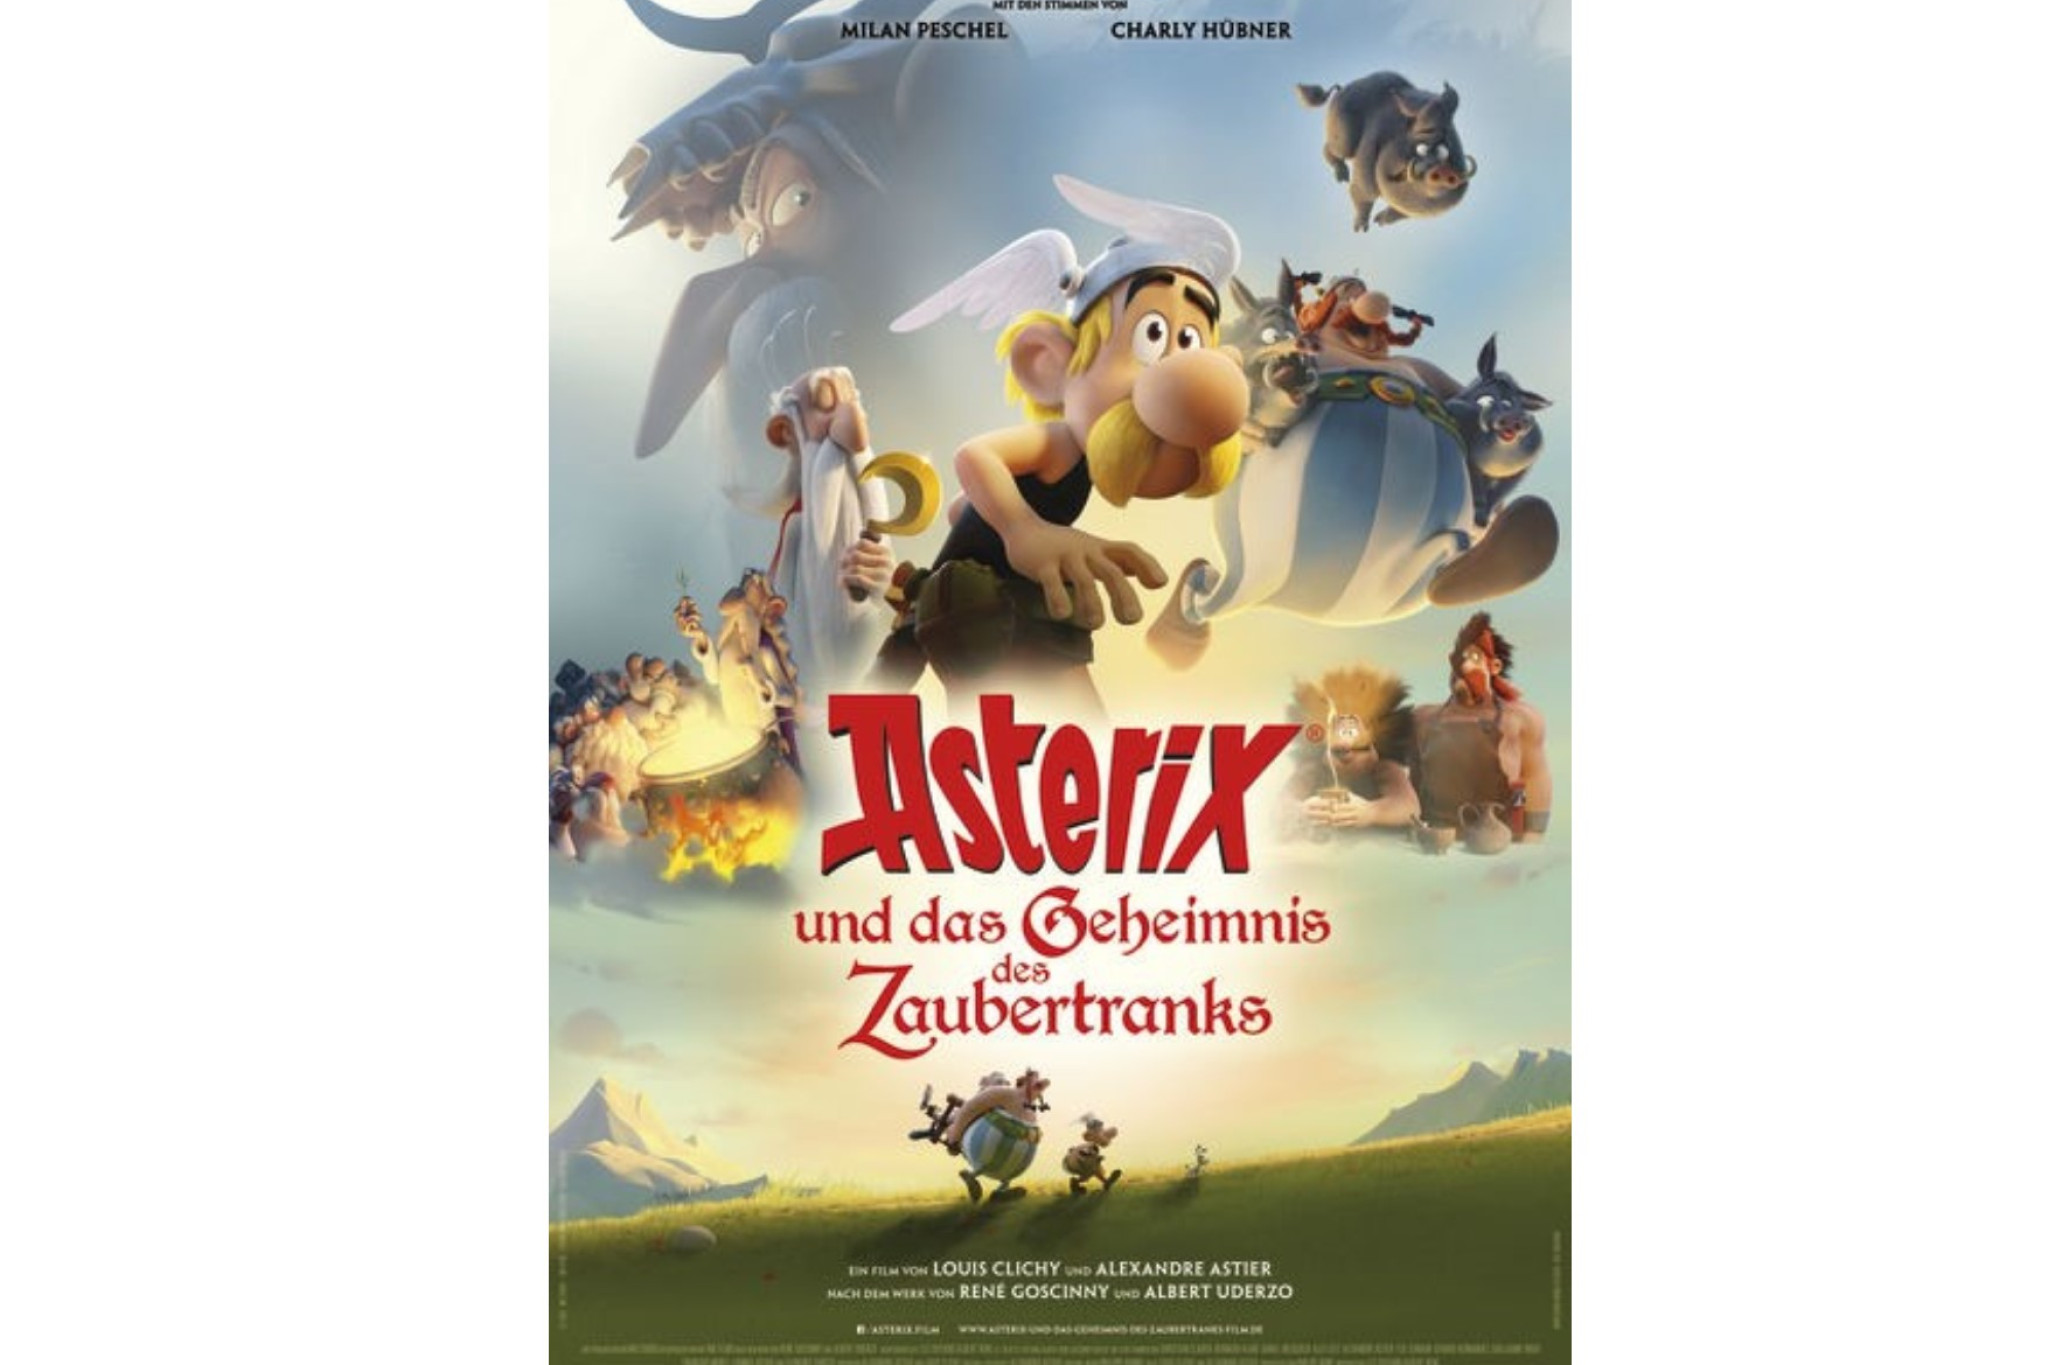 Asterix Film News